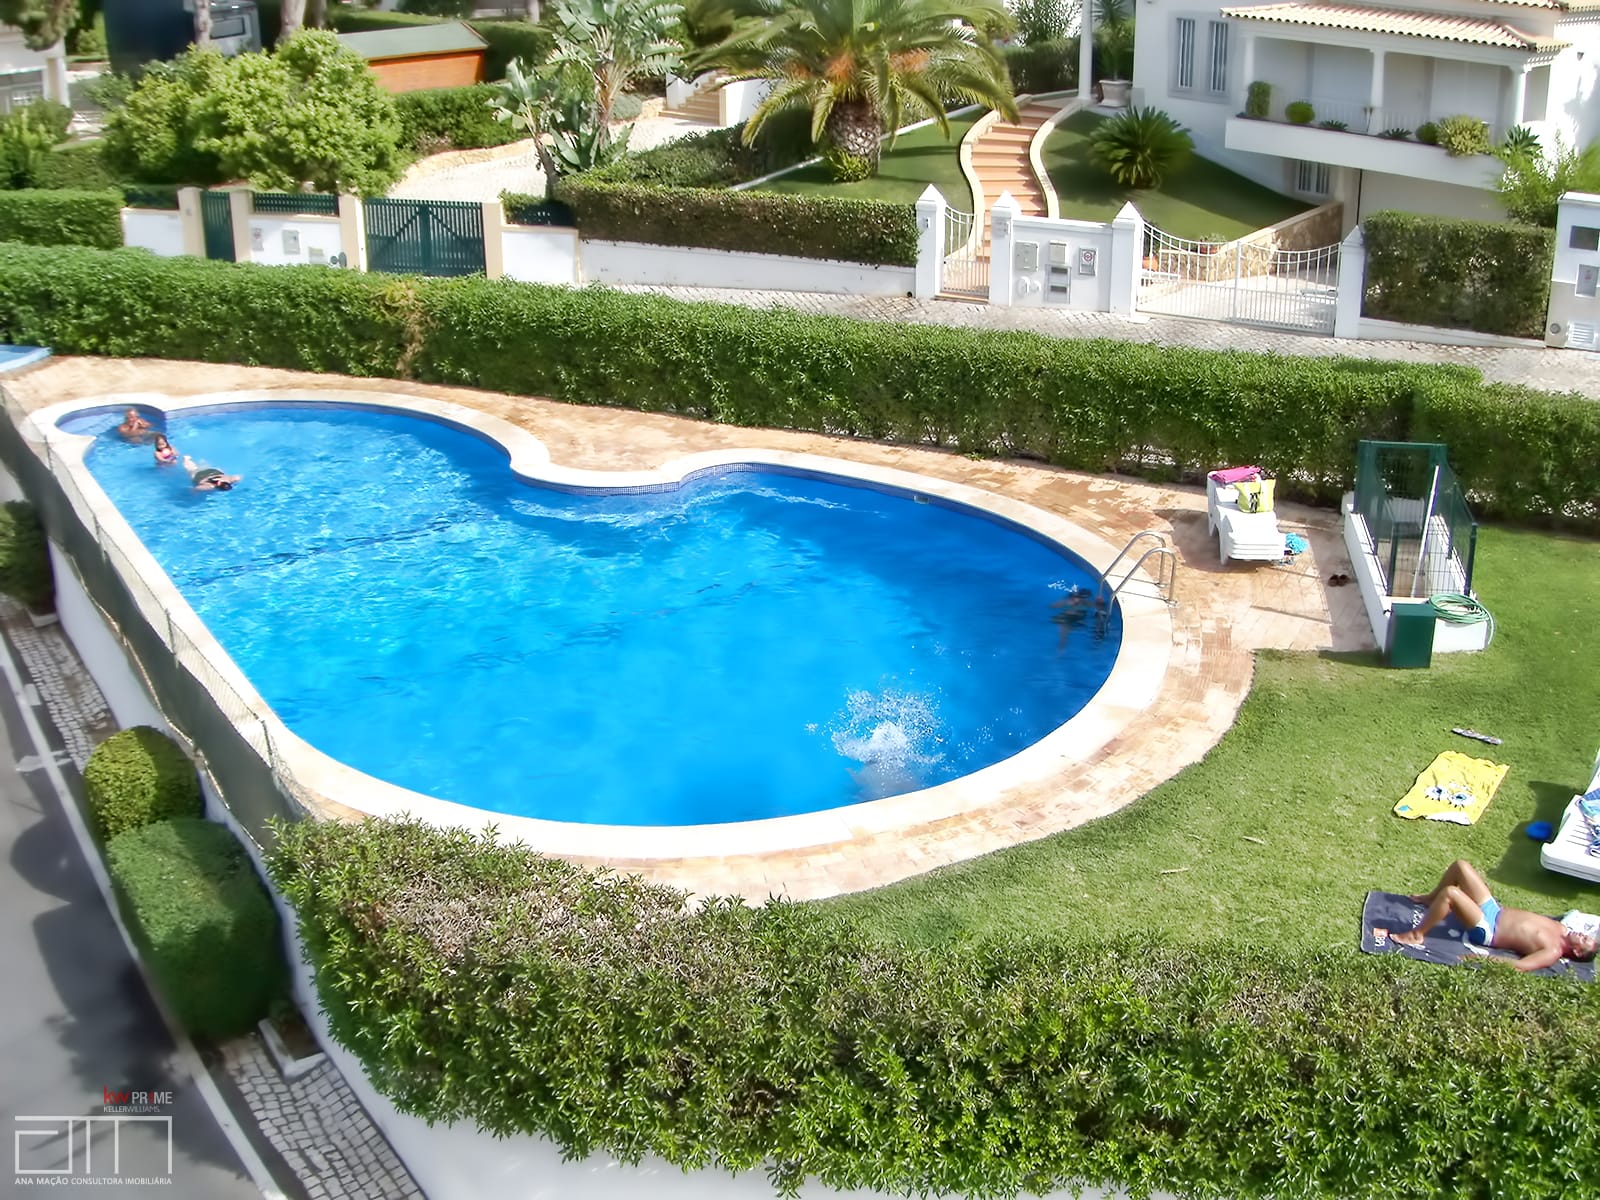 Condominium swimming pool